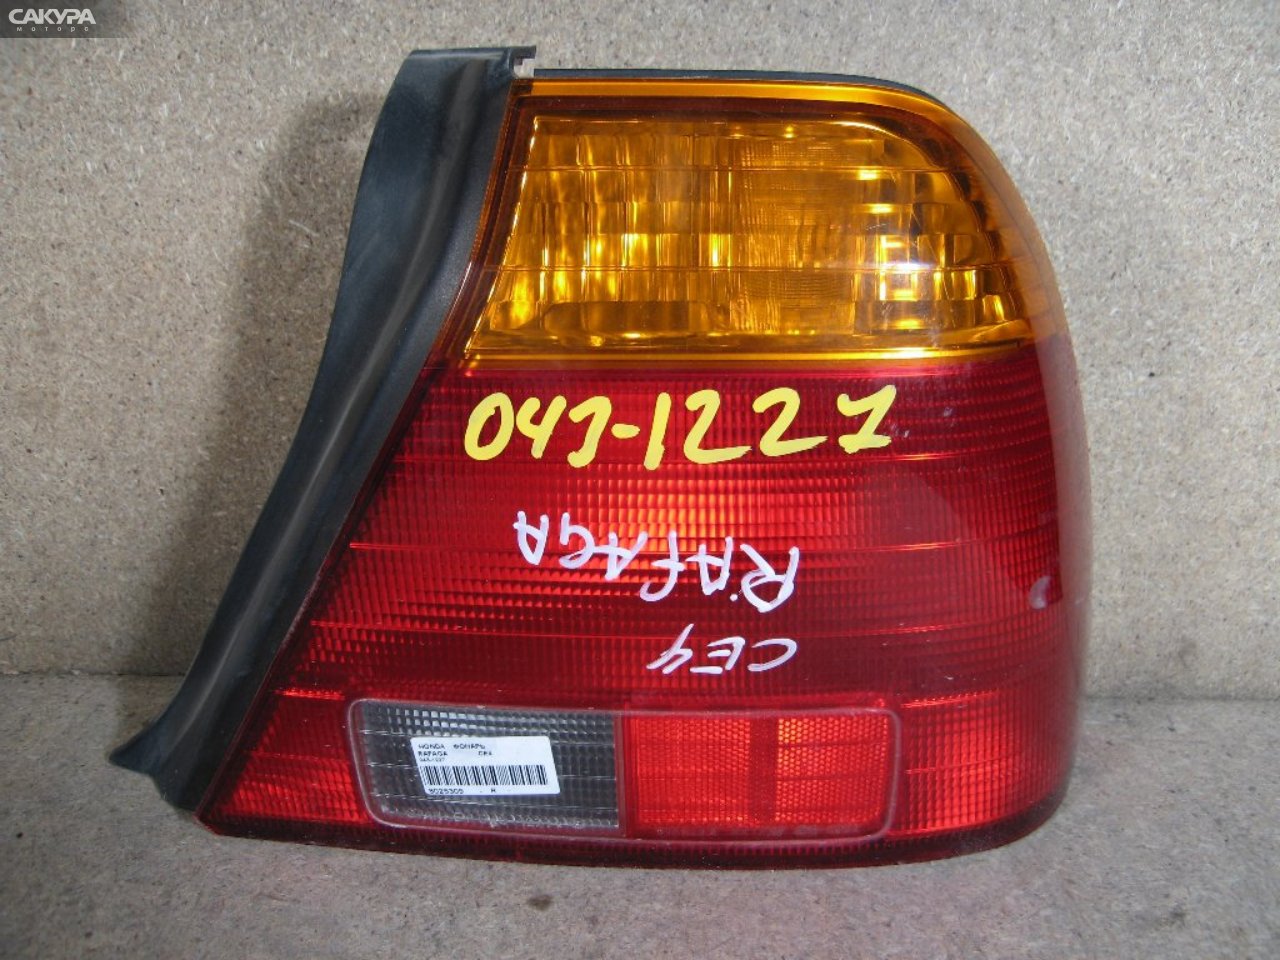 Фонарь стоп-сигнала правый Honda Rafaga CE4 043-1227: купить в Сакура Абакан.